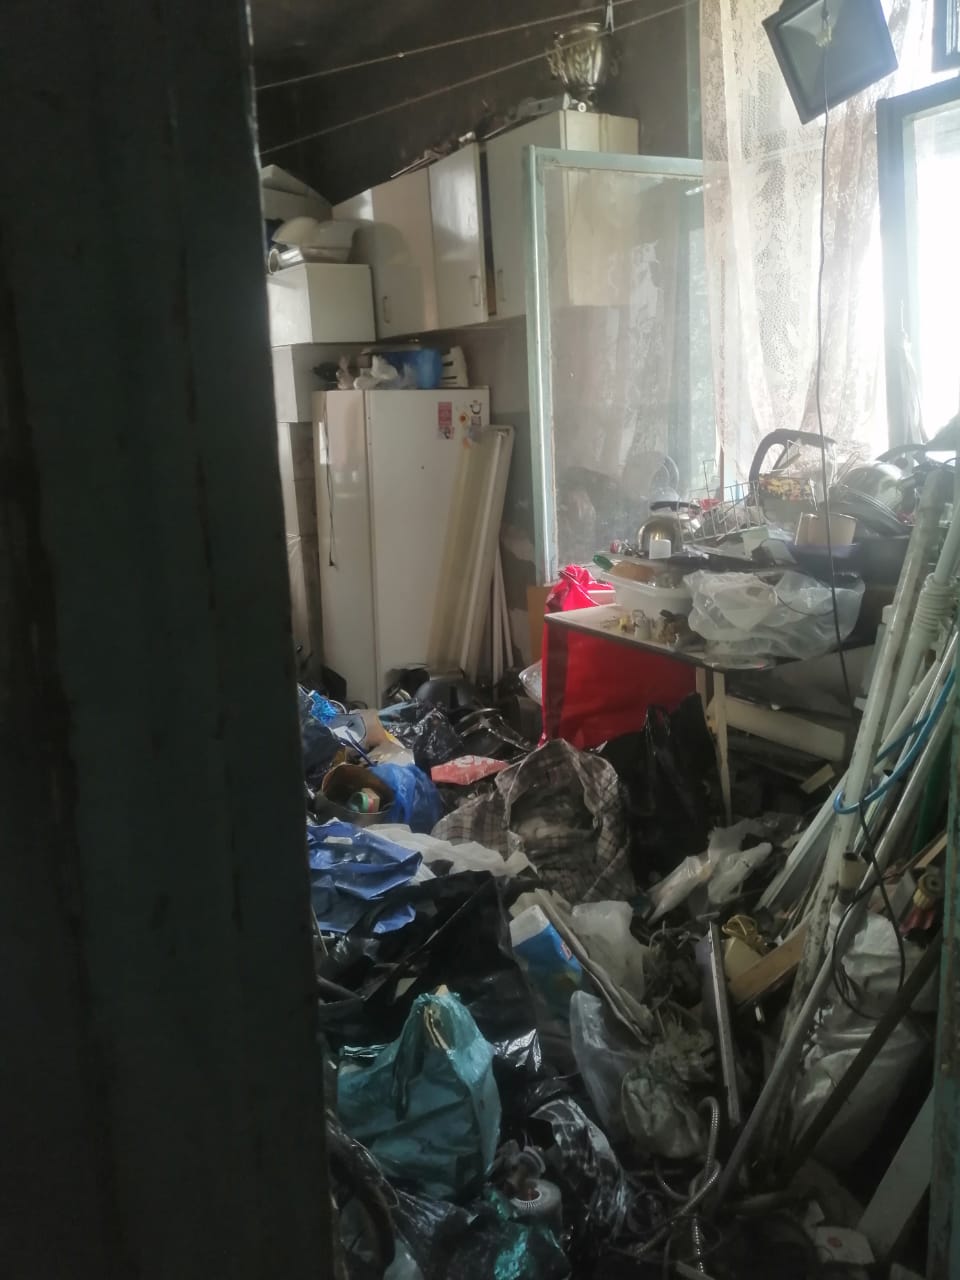 Омичка вместе с сыном превратила квартиру в мусорку с тараканами #Новости #Общество #Омск